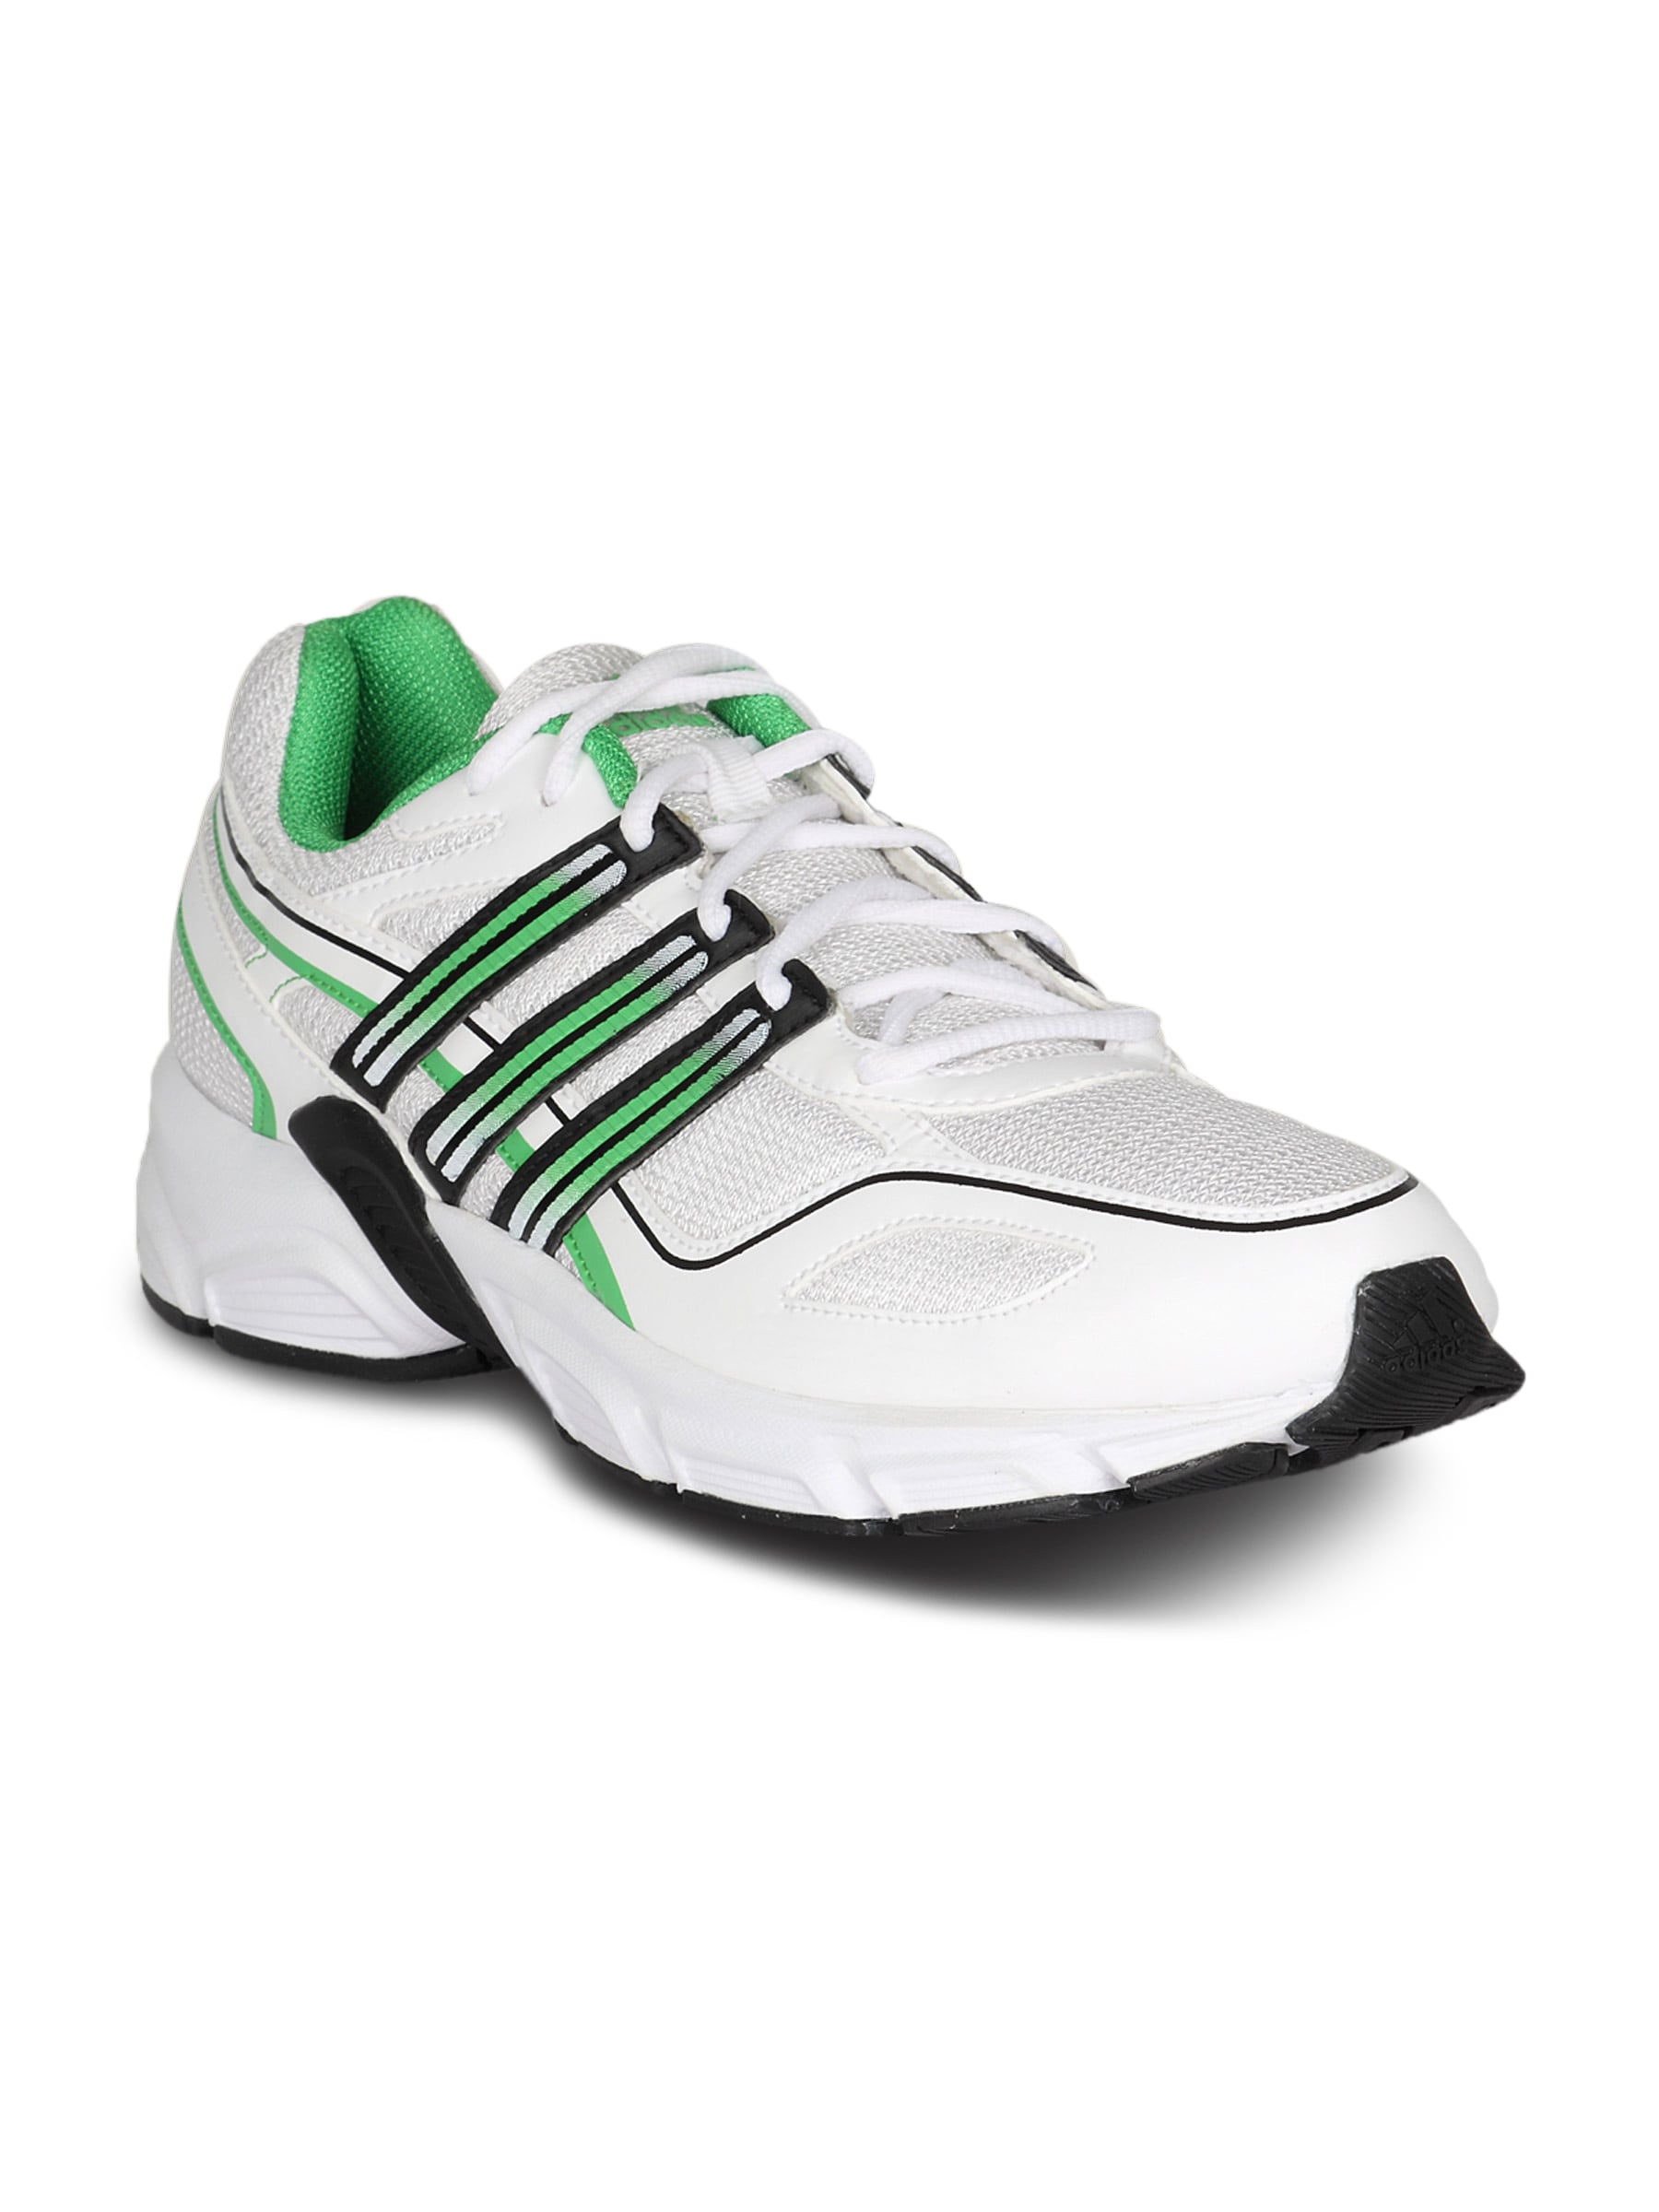 ADIDAS Men's Primo White Green Shoe